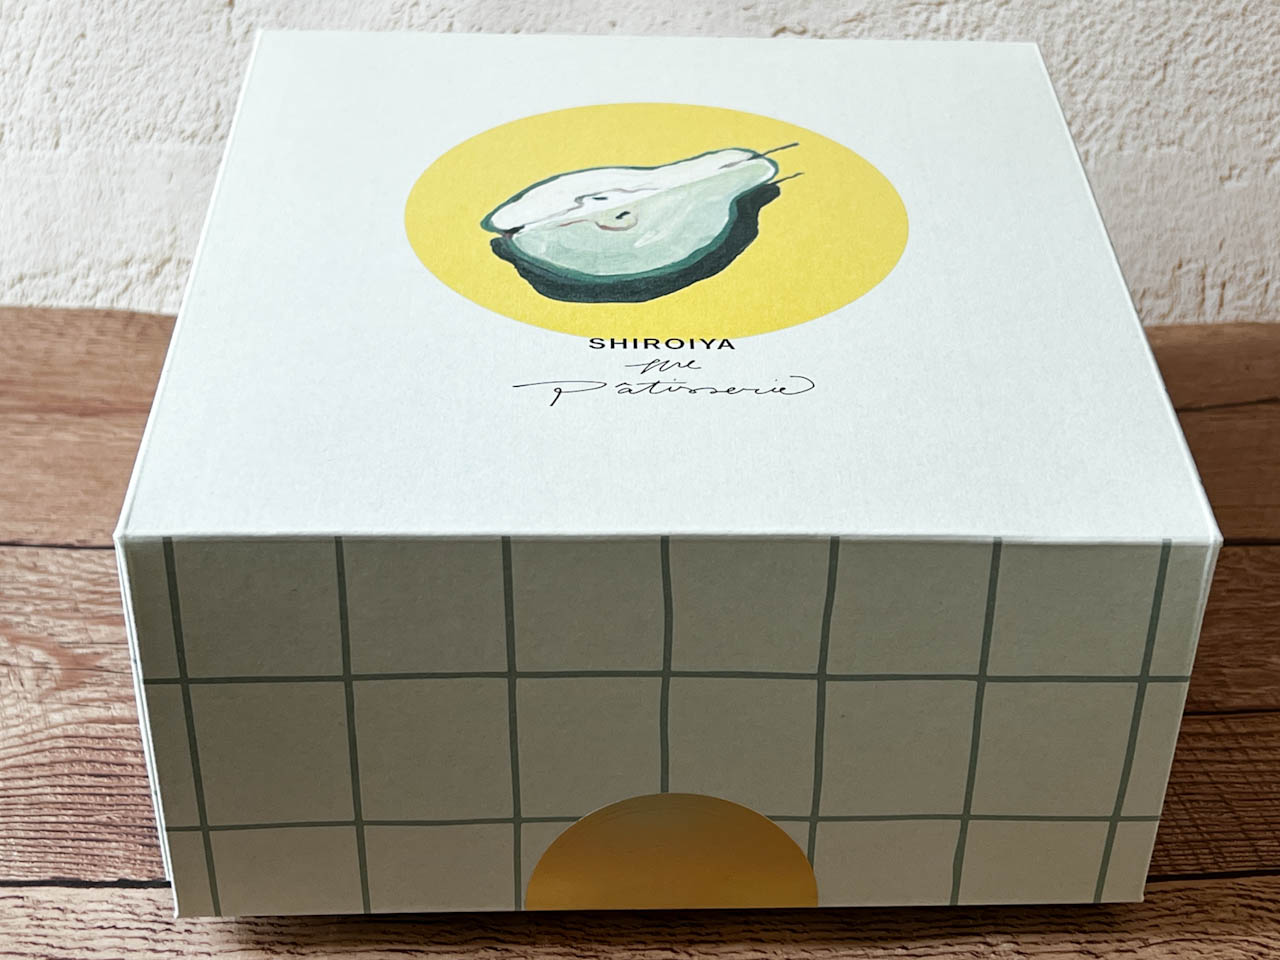 「上州焼き菓子詰め合わせセット」は、群馬県前橋市にある白井屋ホテル内のパティスリー「⽩井屋ザ・パティスリー」の焼き菓子を詰め合わせたボックスセット